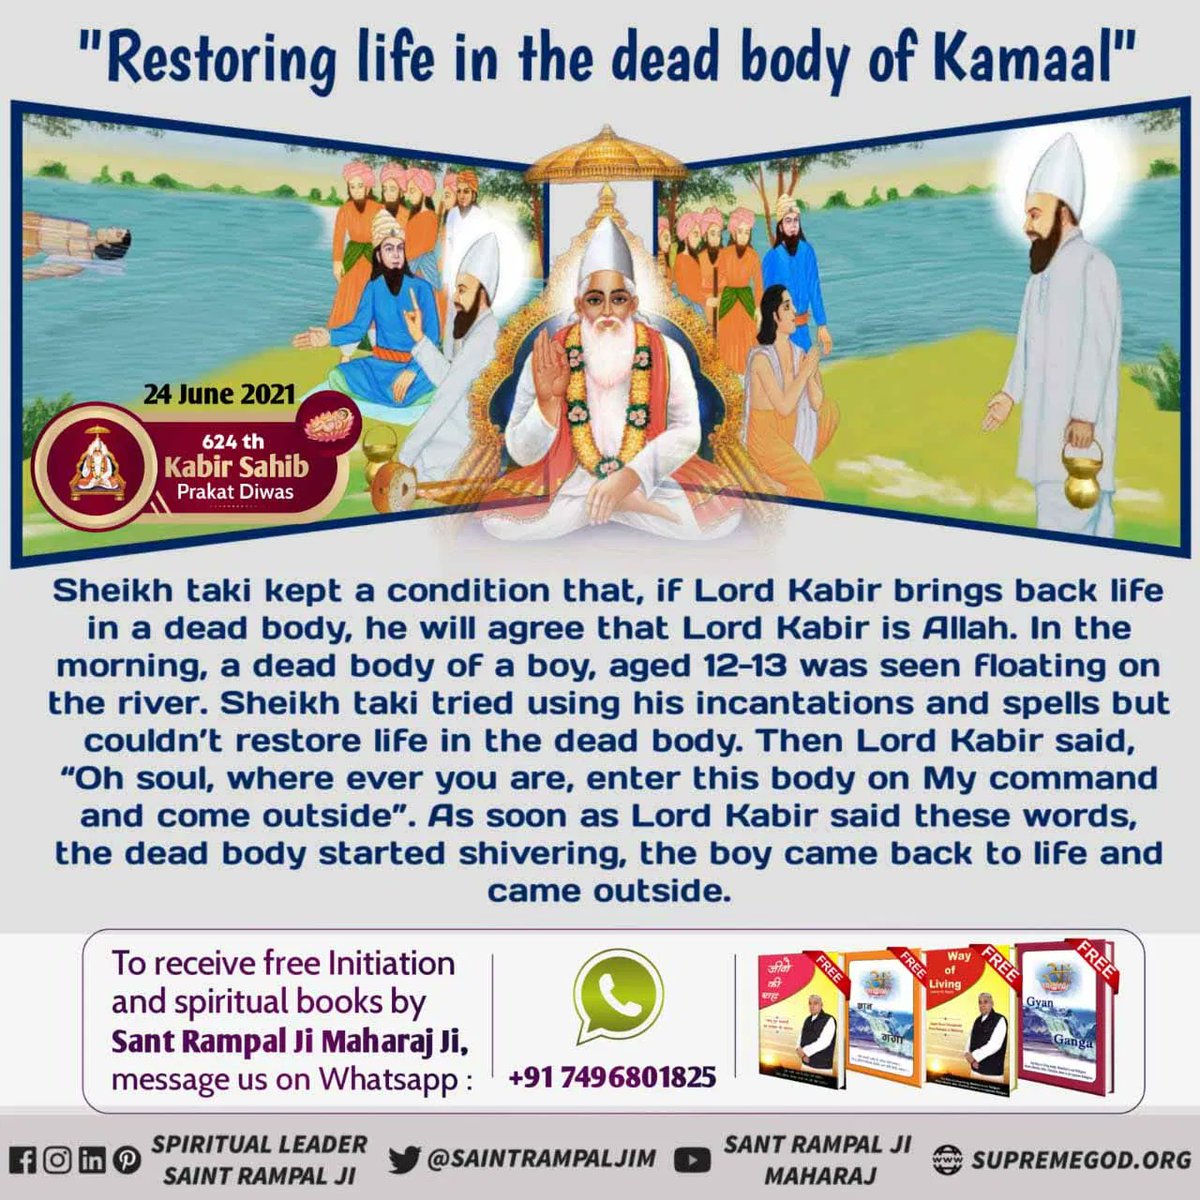 #UnknownMiraclesOfGodKabir
Kabir Prakat Diwas 24 June
Miracle of god kabir ji they restored life in a dead body of Kamaal. Later Kamaal live with Kabir ji as their son.